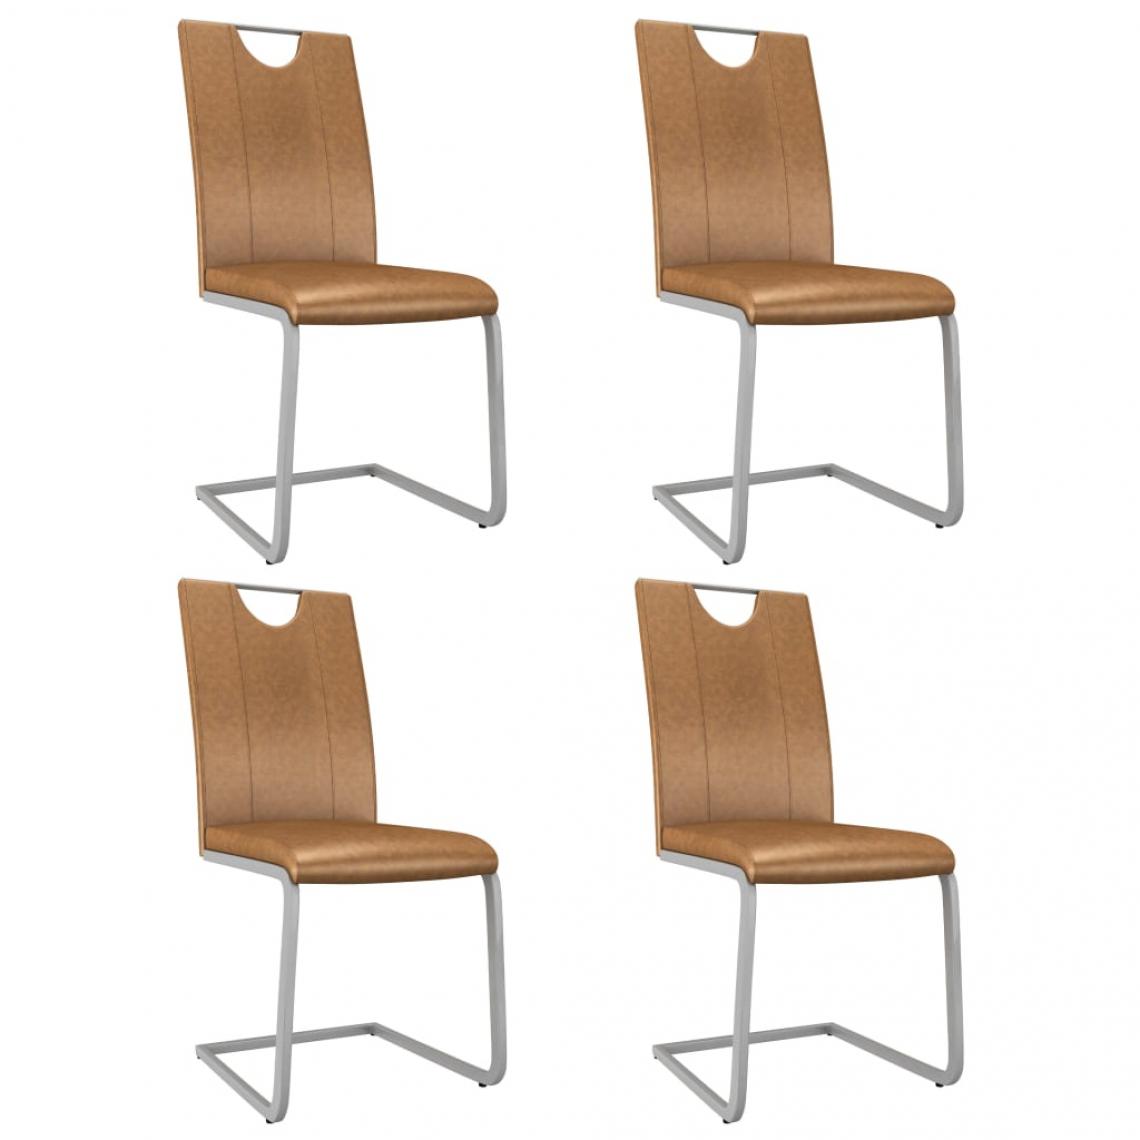 Decoshop26 - Lot de 4 chaises de salle à manger cuisine design contemporain similicuir marron CDS021720 - Chaises